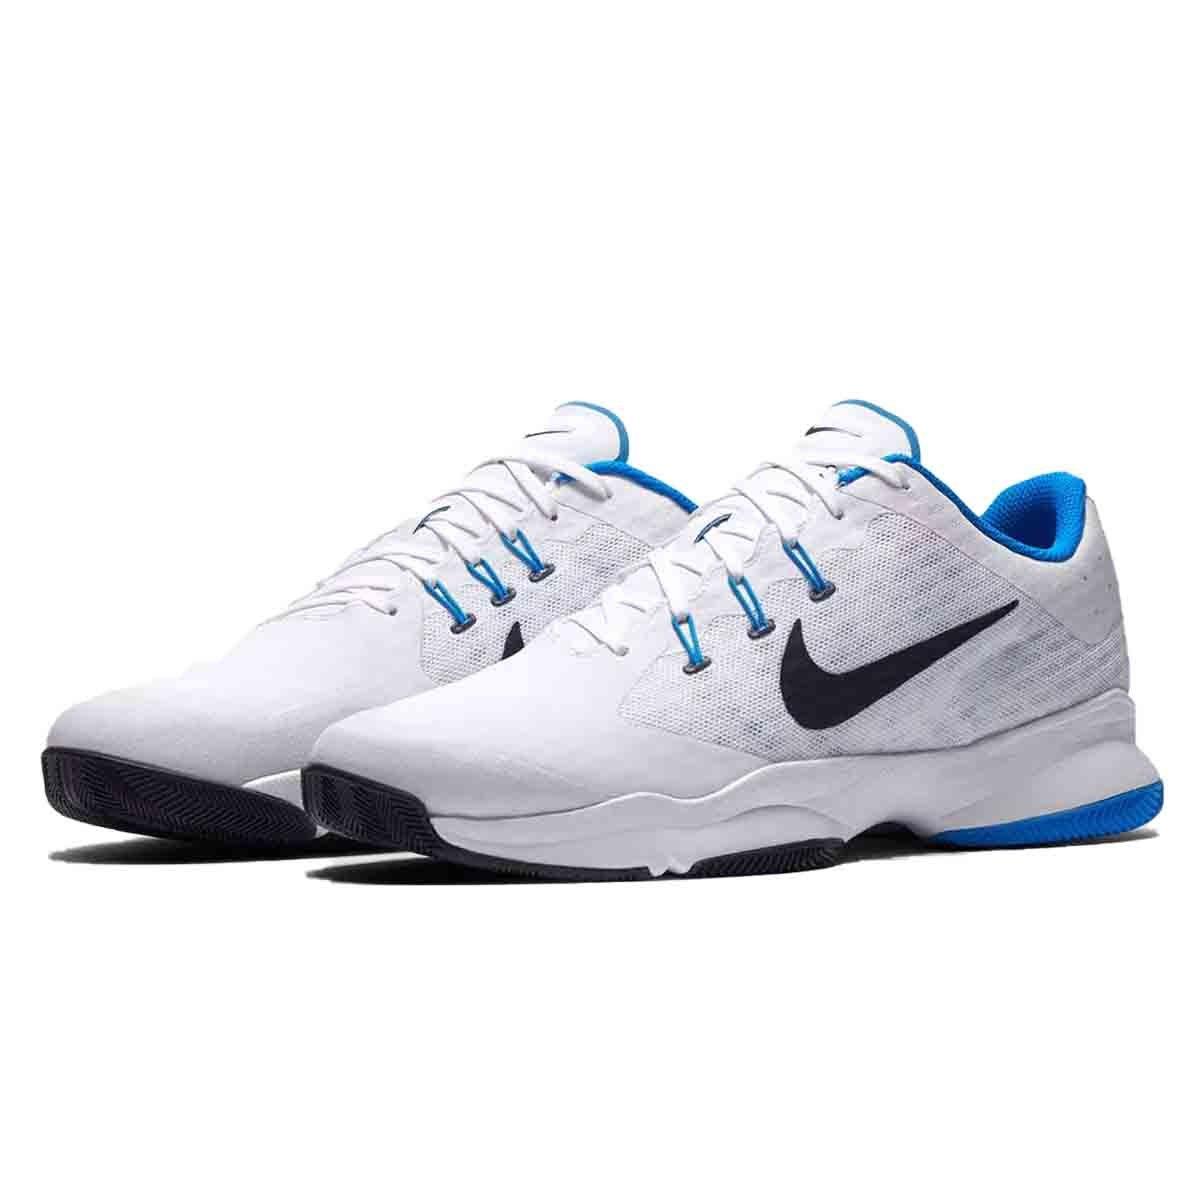 Omgeving Genre Televisie kijken Buy Nike Air Zoom Ultra Tennis Shoes (White/Blue/Obsidian) Online